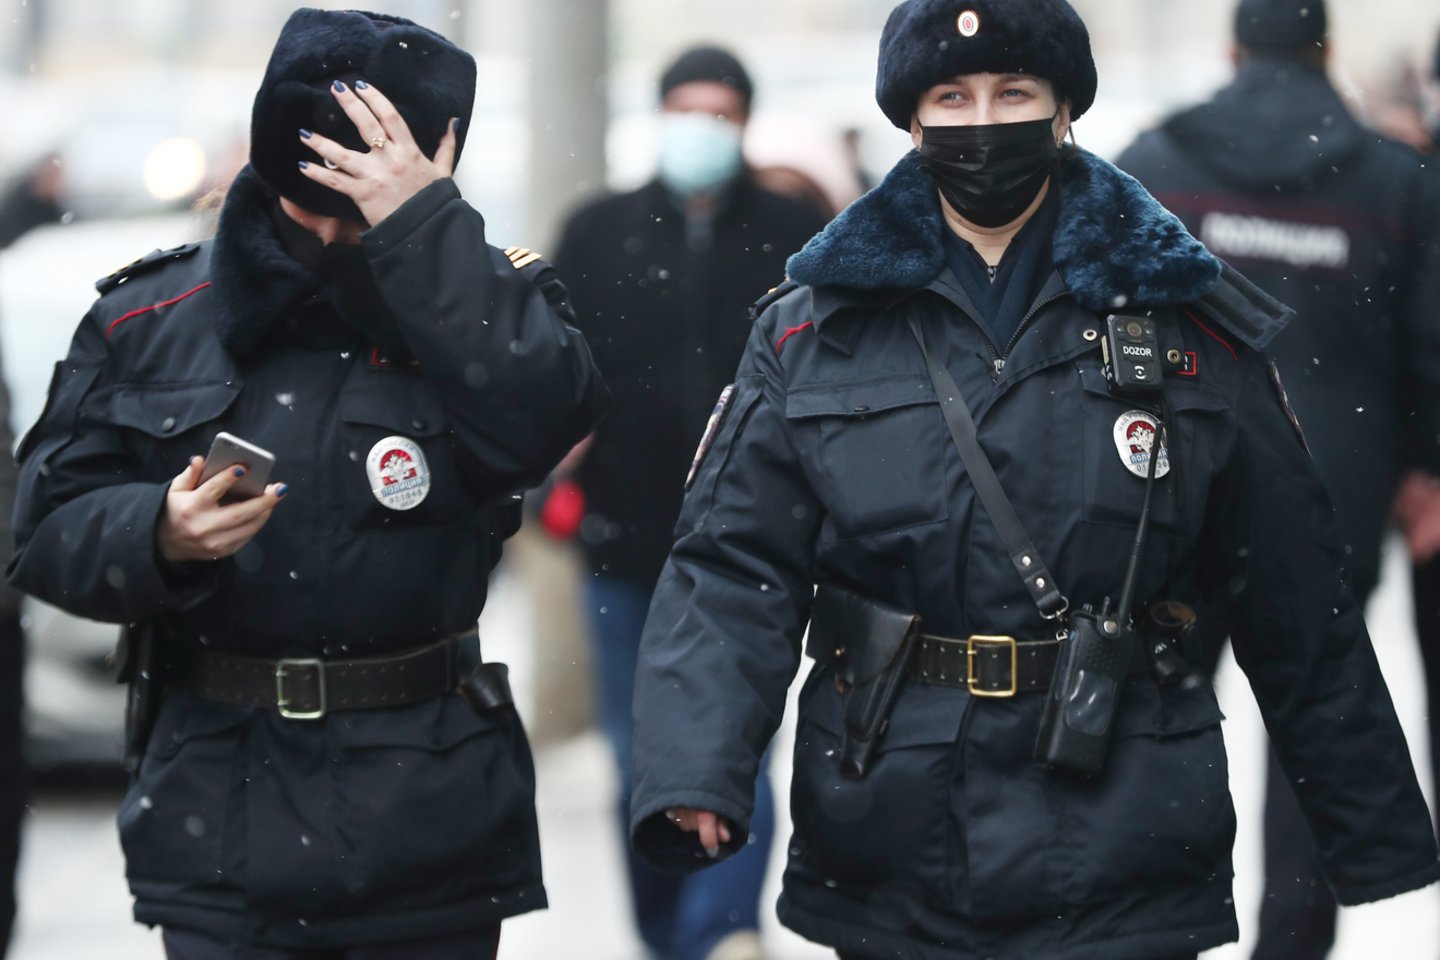  Rusijos policija atliko kratą studentų žurnalo biure dėl vaizdo įrašo apie demonstracijas.<br> TASS/Scanpix nuotr.